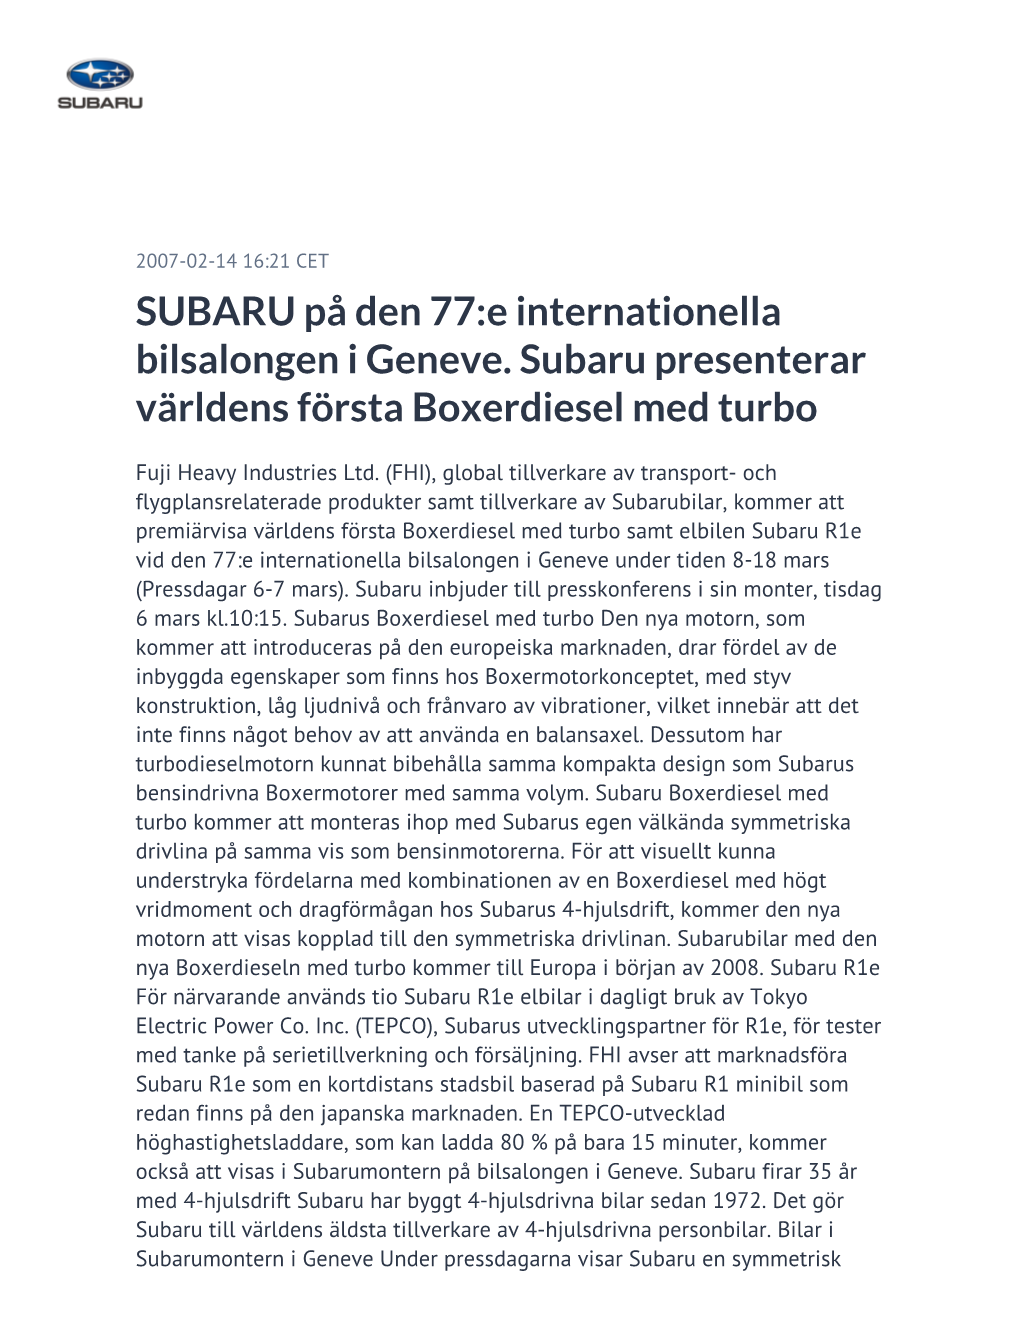 SUBARU På Den 77:E Internationella Bilsalongen I Geneve. Subaru Presenterar Världens Första Boxerdiesel Med Turbo